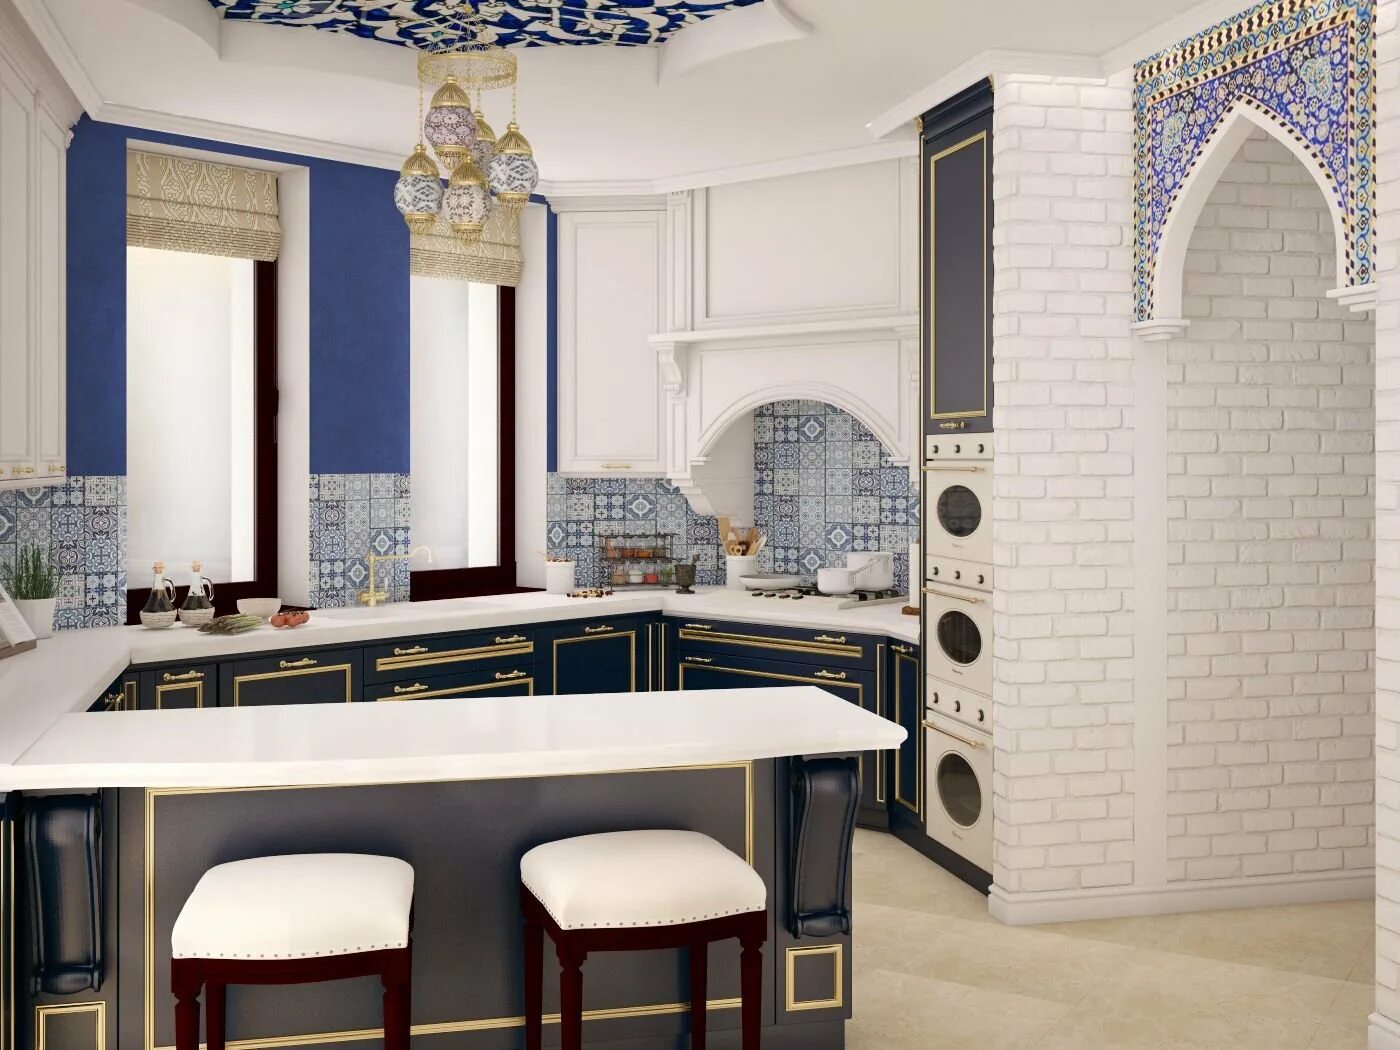 Кухня в стиле Марракеш. Стиль Марокко кухни марокканский стиль. Кухонный гарнитур в Восточном стиле Марокко. Кухня в стиле Марокко.